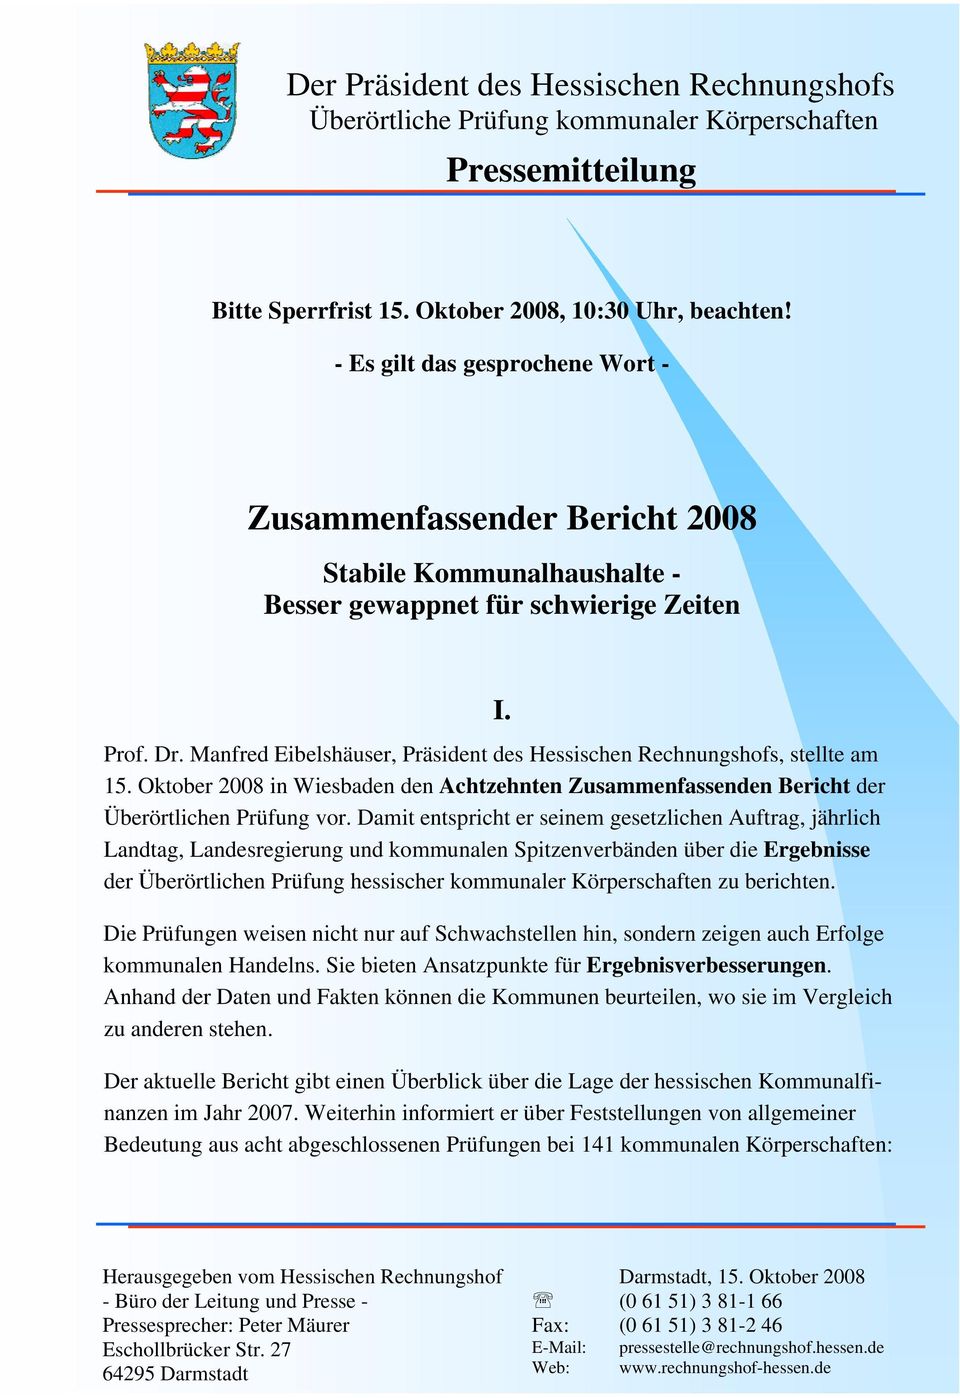 Manfred Eibelshäuser, Präsident des Hessischen Rechnungshofs, stellte am 15. Oktober 2008 in Wiesbaden den Achtzehnten Zusammenfassenden Bericht der Überörtlichen Prüfung vor.